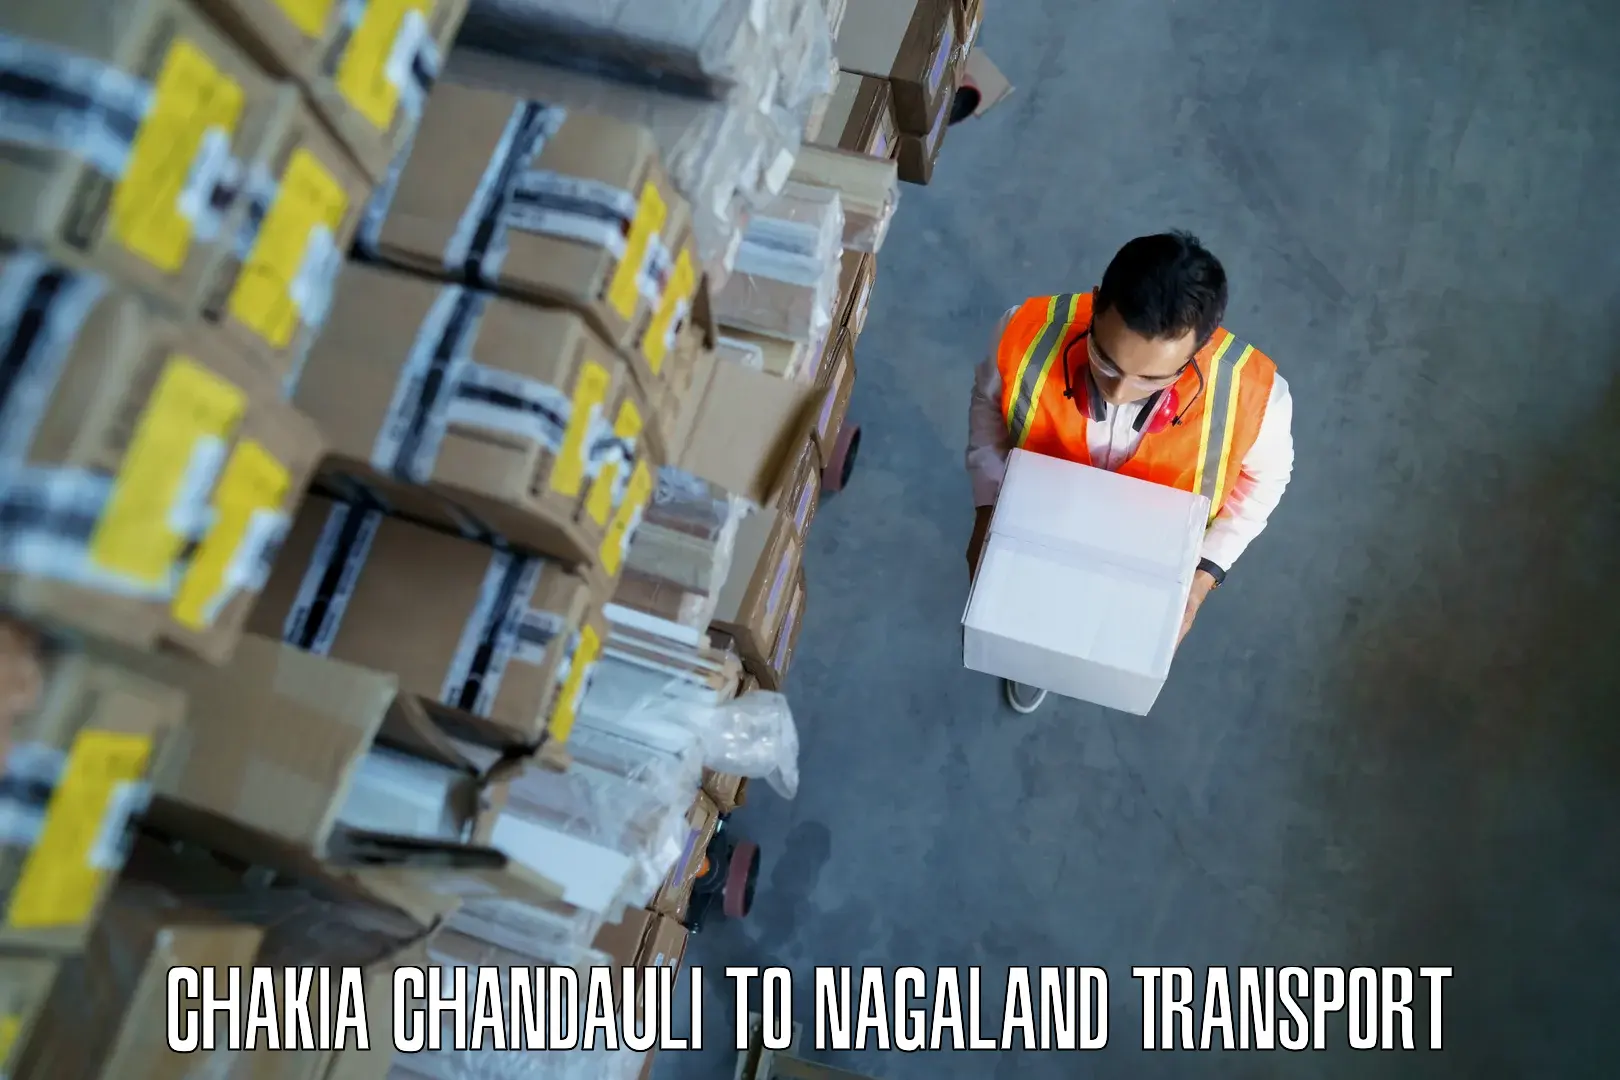 Pick up transport service Chakia Chandauli to Longleng